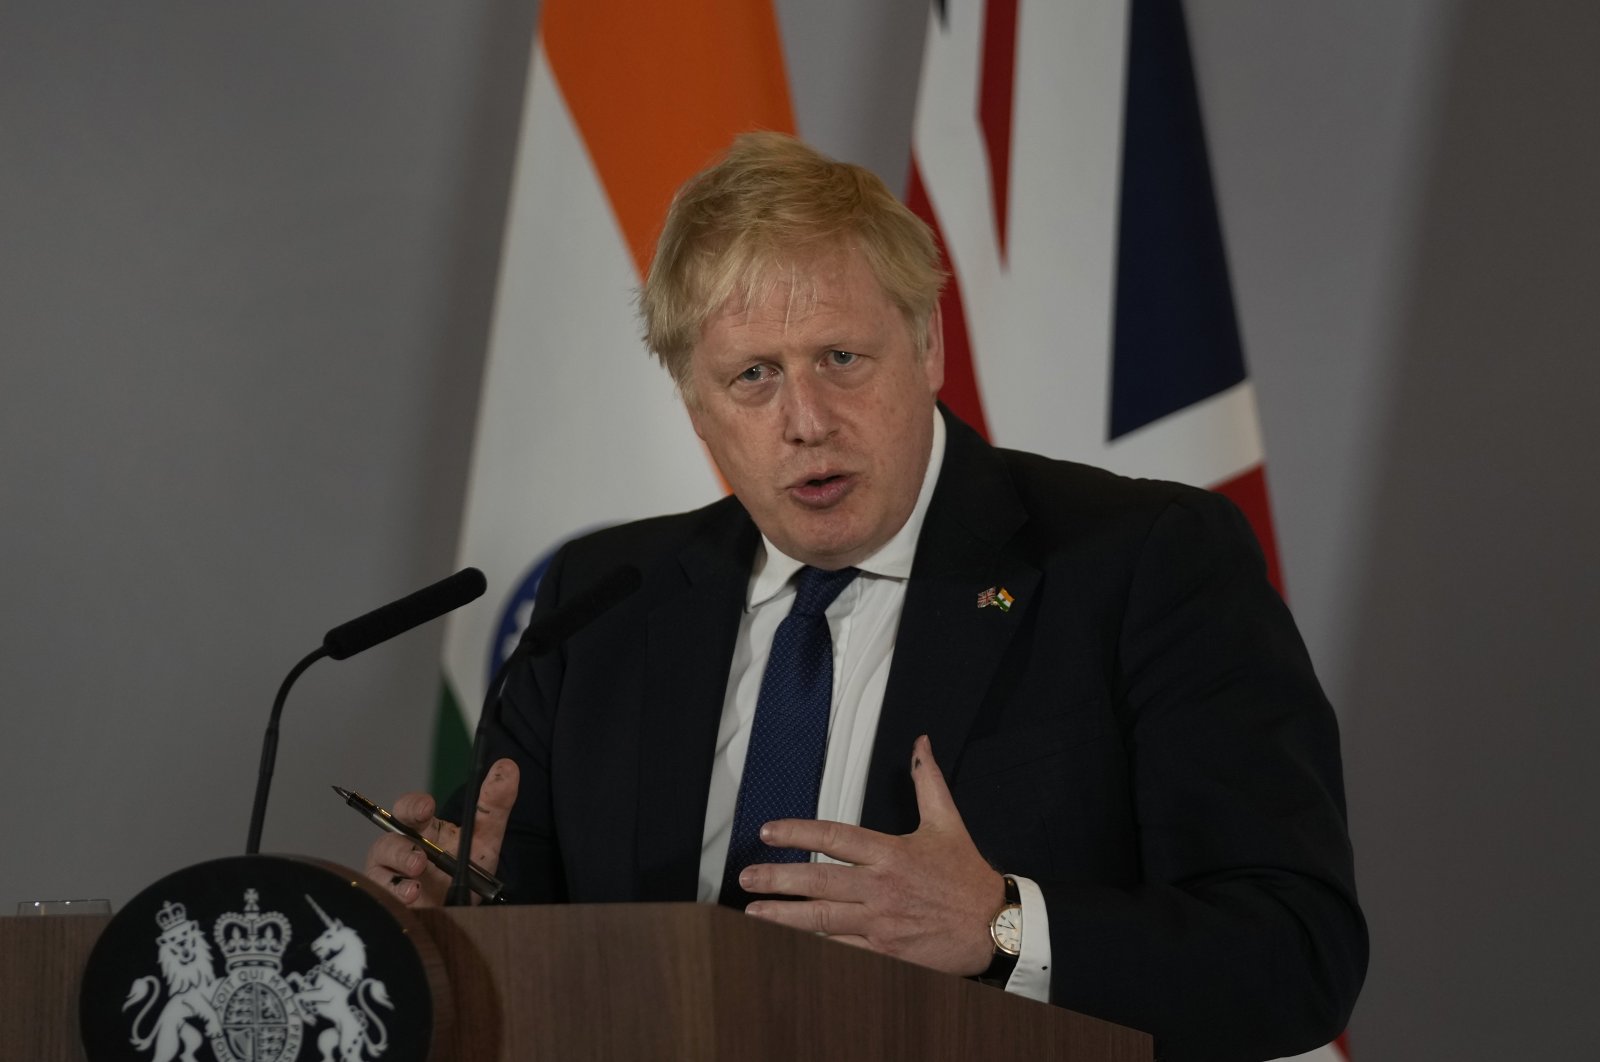 Tidak ada kembalinya hubungan normal untuk Putin: PM Inggris Johnson